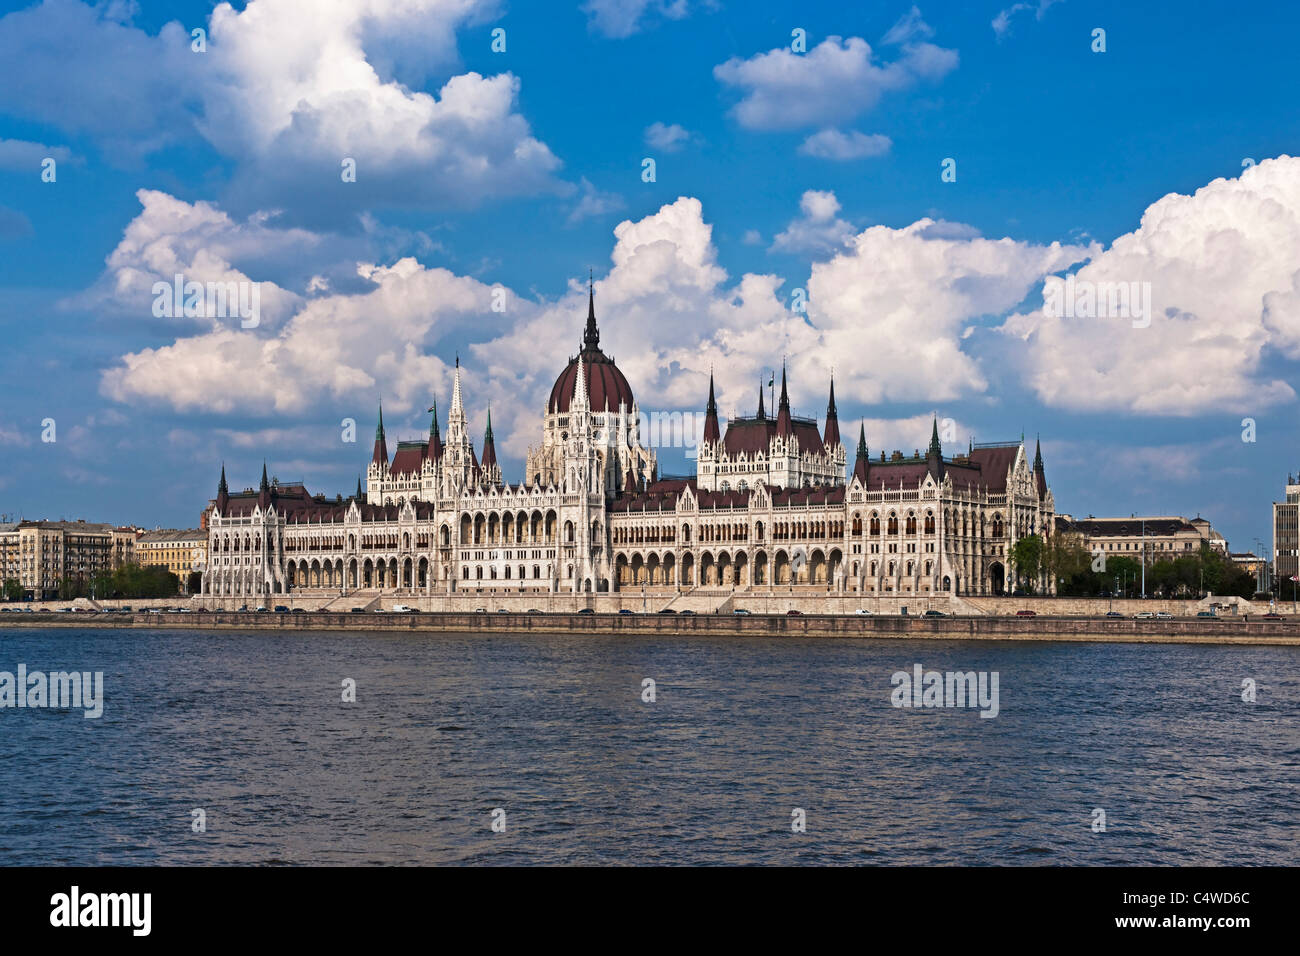 Parlament Budapest, Hongrie | Parlement Budapest, Hongrie Banque D'Images